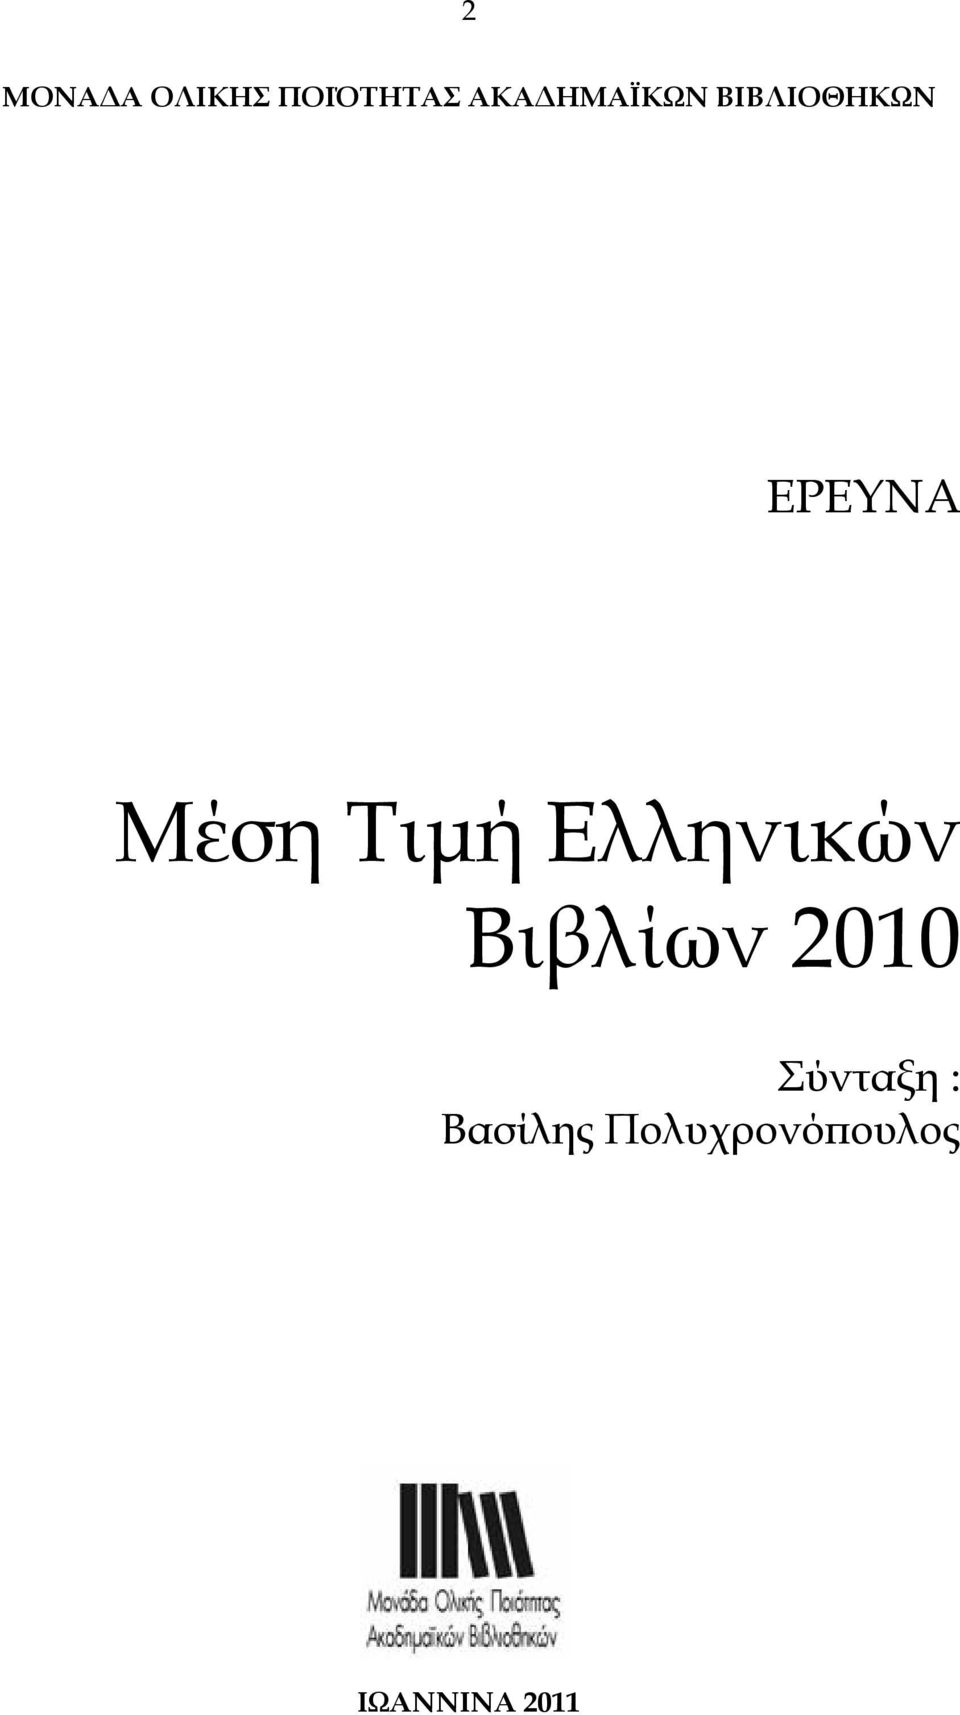 Τιµή Ελληνικών Βιβλίων Σύνταξη :